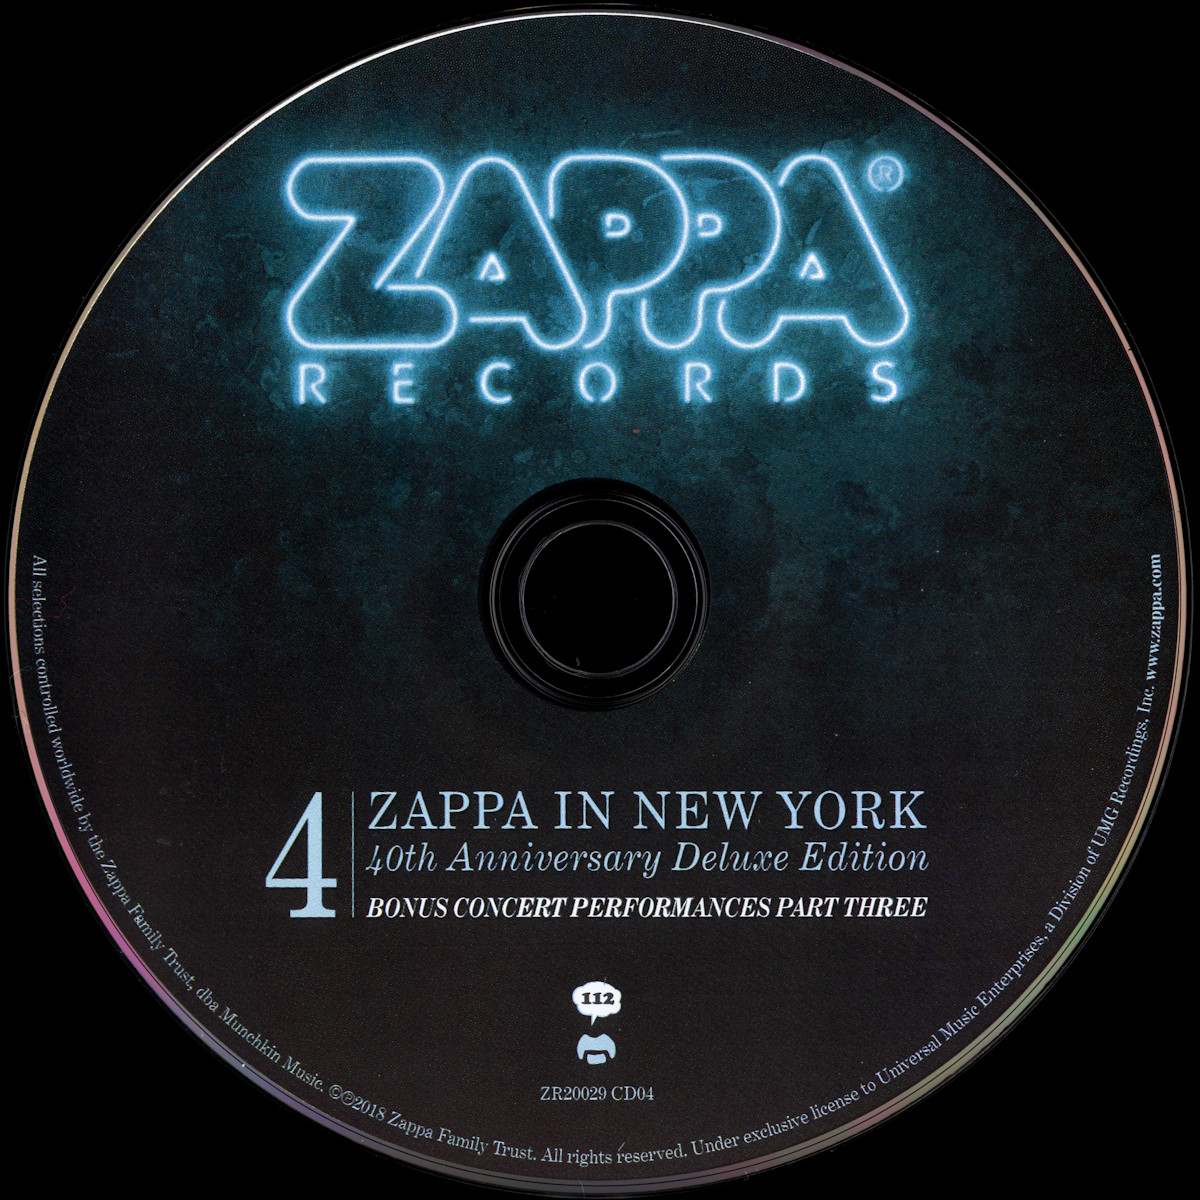 Frank Zappa Official Release 112 Wolf S Kompaktkiste